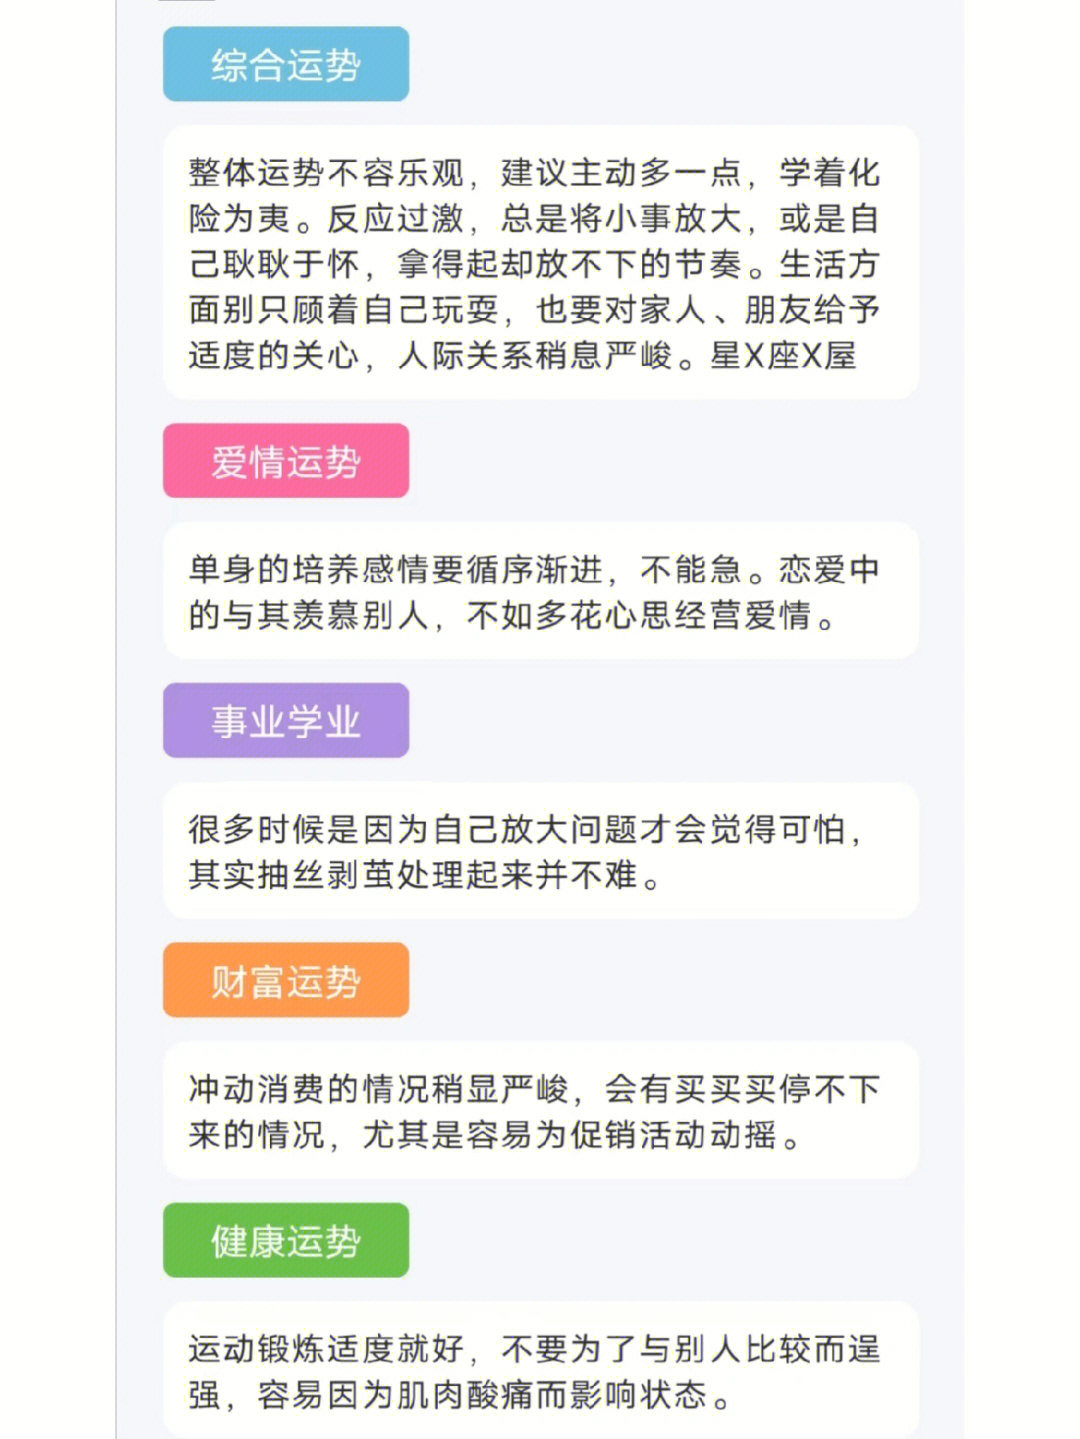 星座每日运势查询运势_sitexingzuo360.cn 腾讯星座运势每日运势_每日星座运势